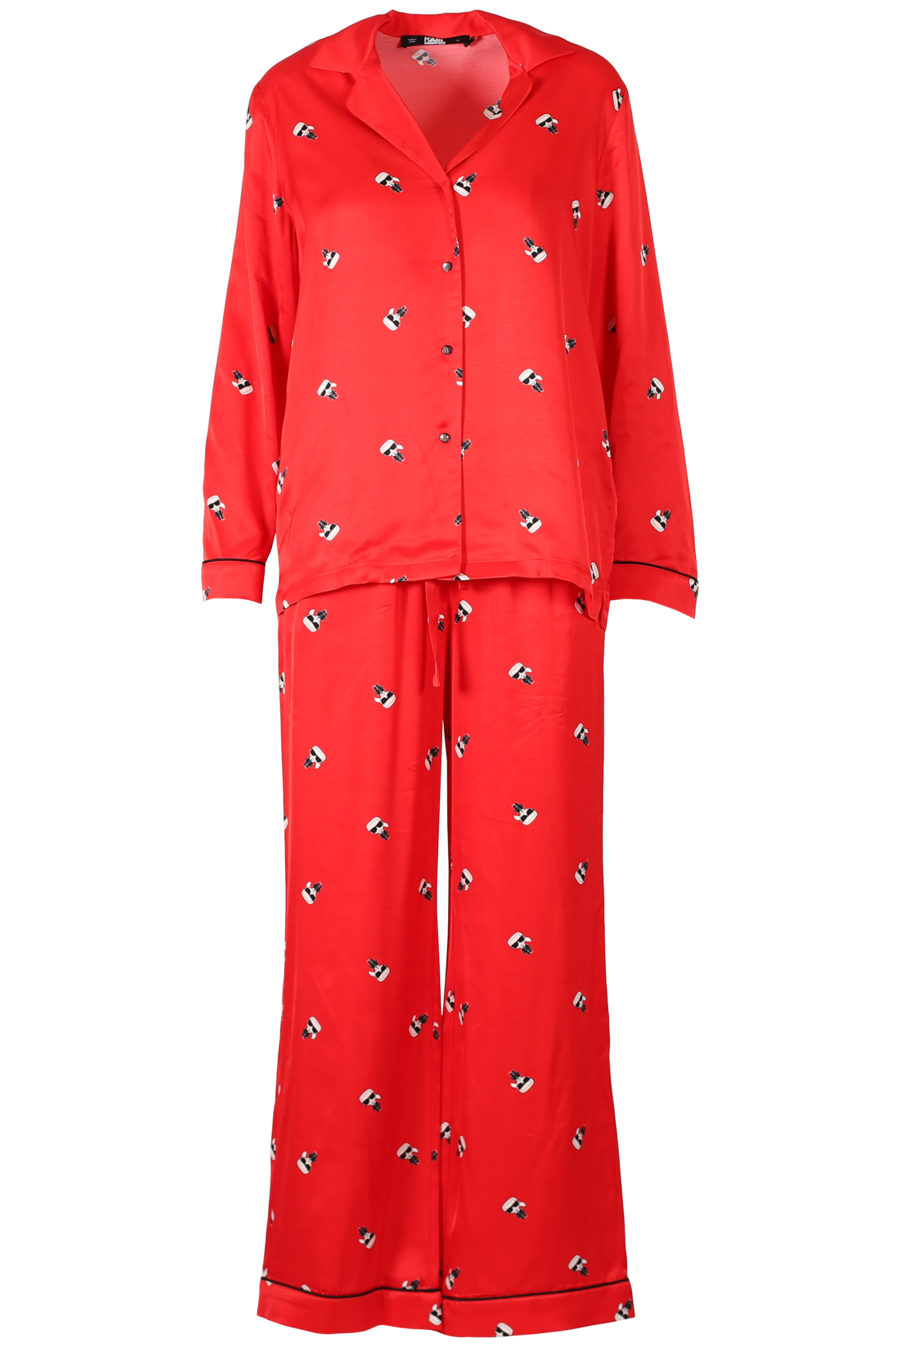 Gift set of red satin pyjamas - IMG 3289